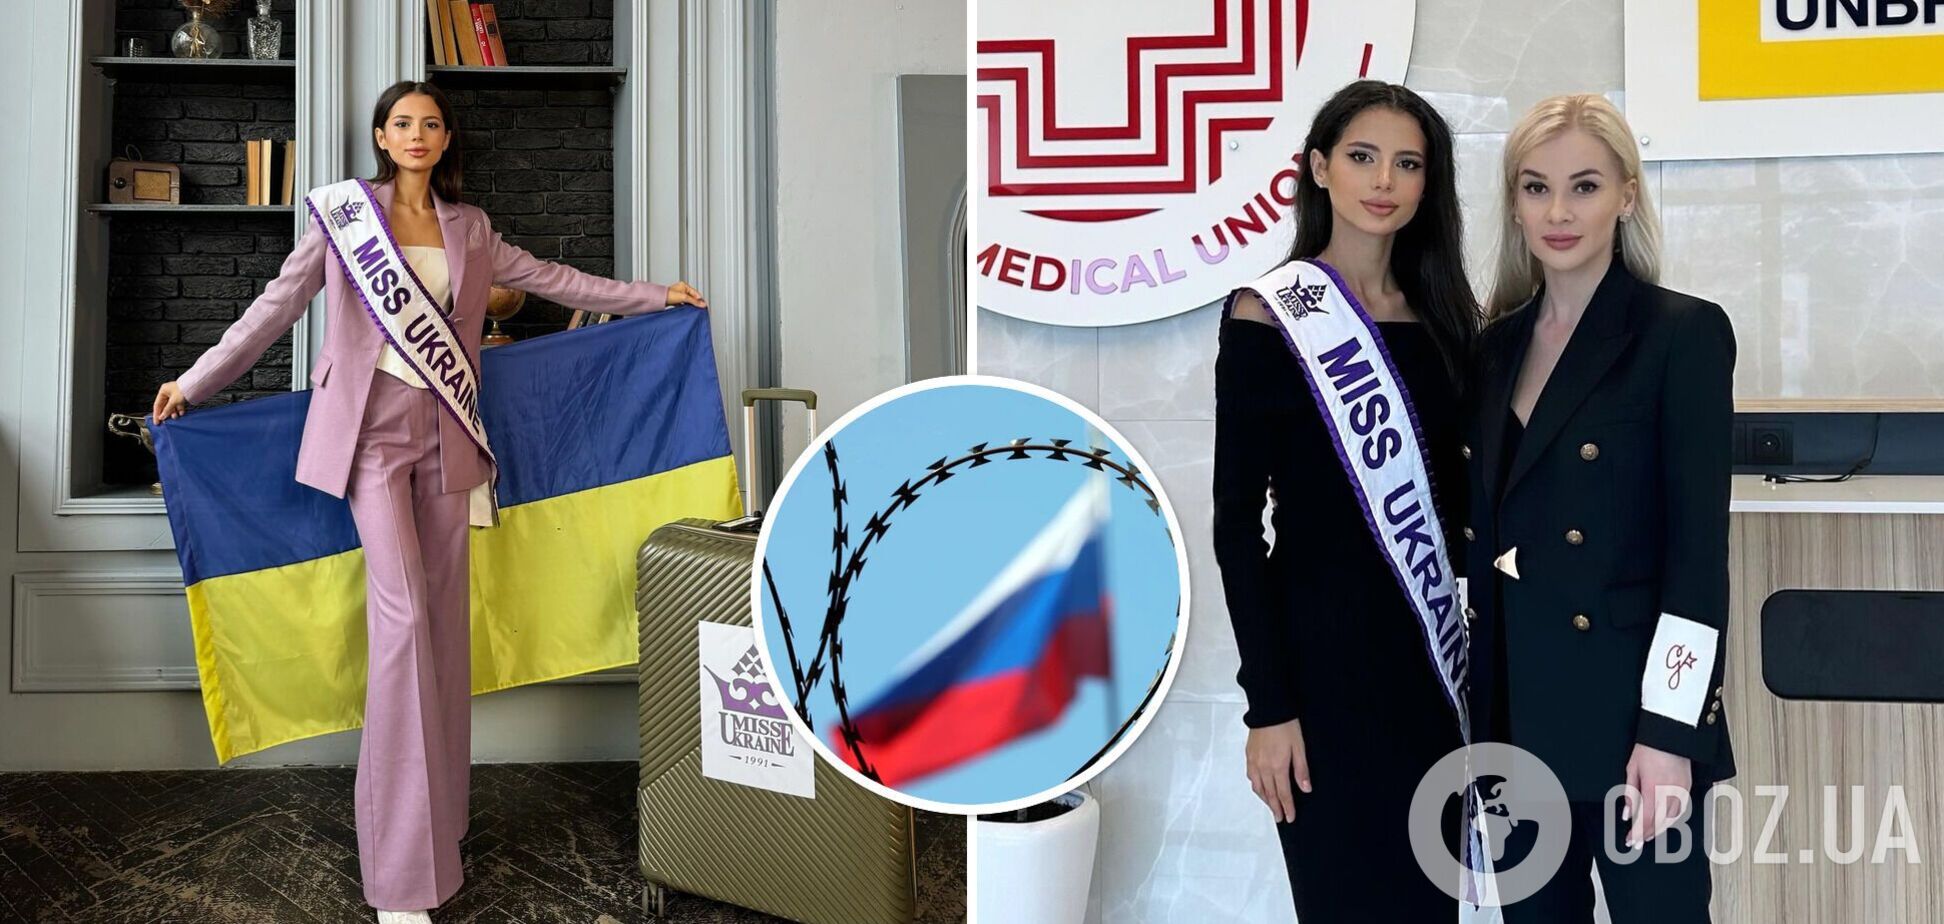 Росія не братиме участь у 'Міс Світу': стало відомо про резонансне рішення оргкомітету конкурсу краси після звернення України